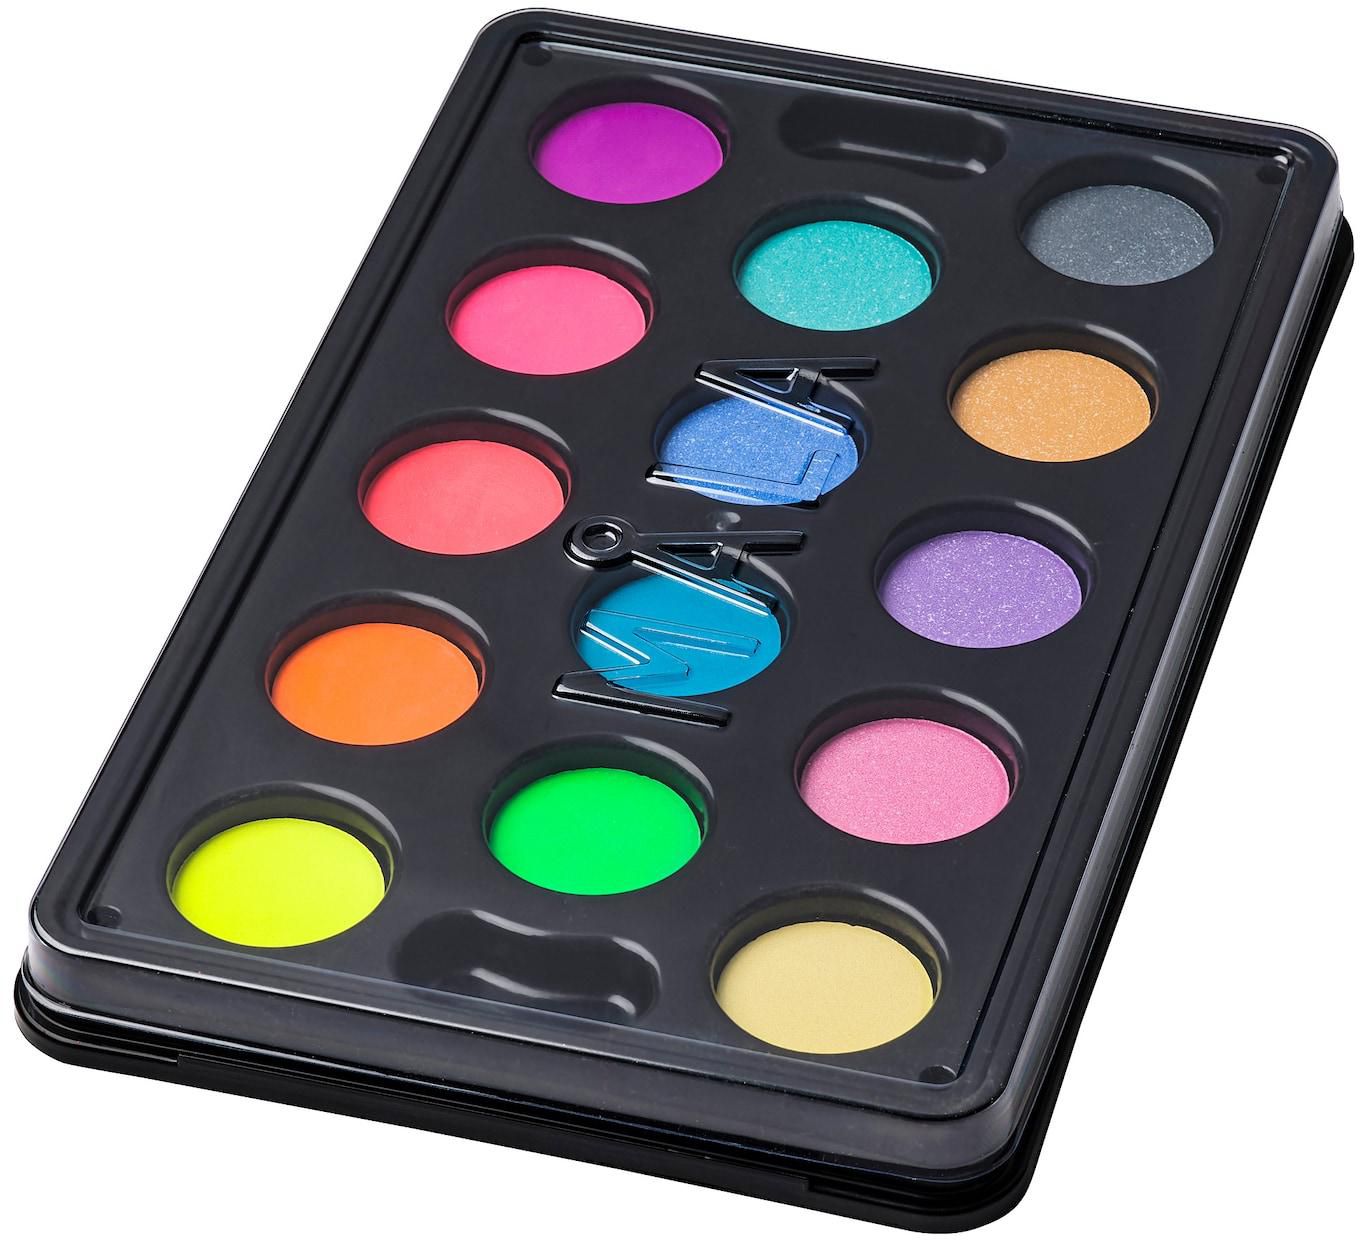 MÅLA صندوق ألوان مائية 14 لون - ألوان منوعة